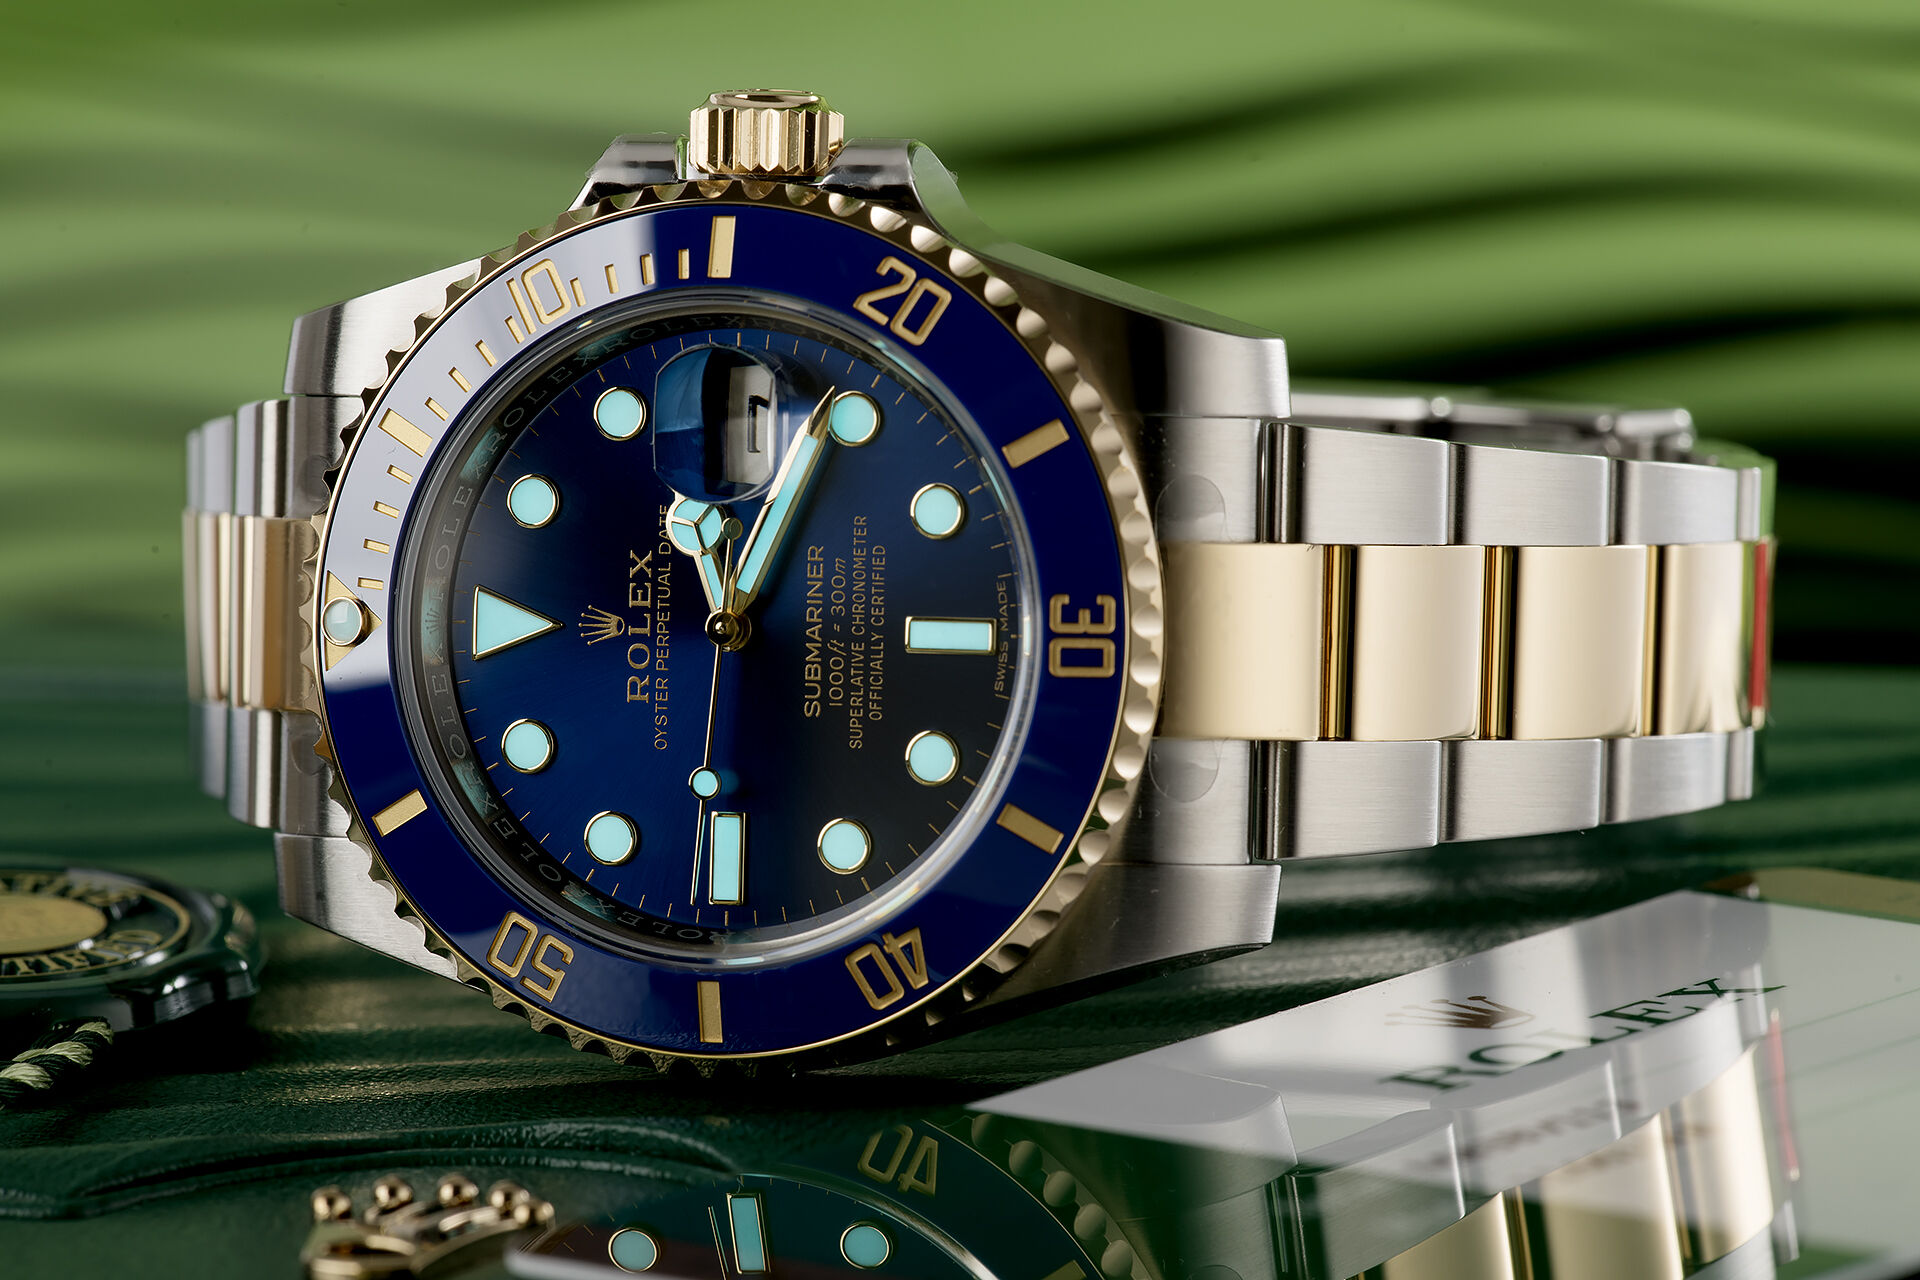 ref 116613LB | Brand New '5 Year Rolex Warranty' | Rolex Submariner Date